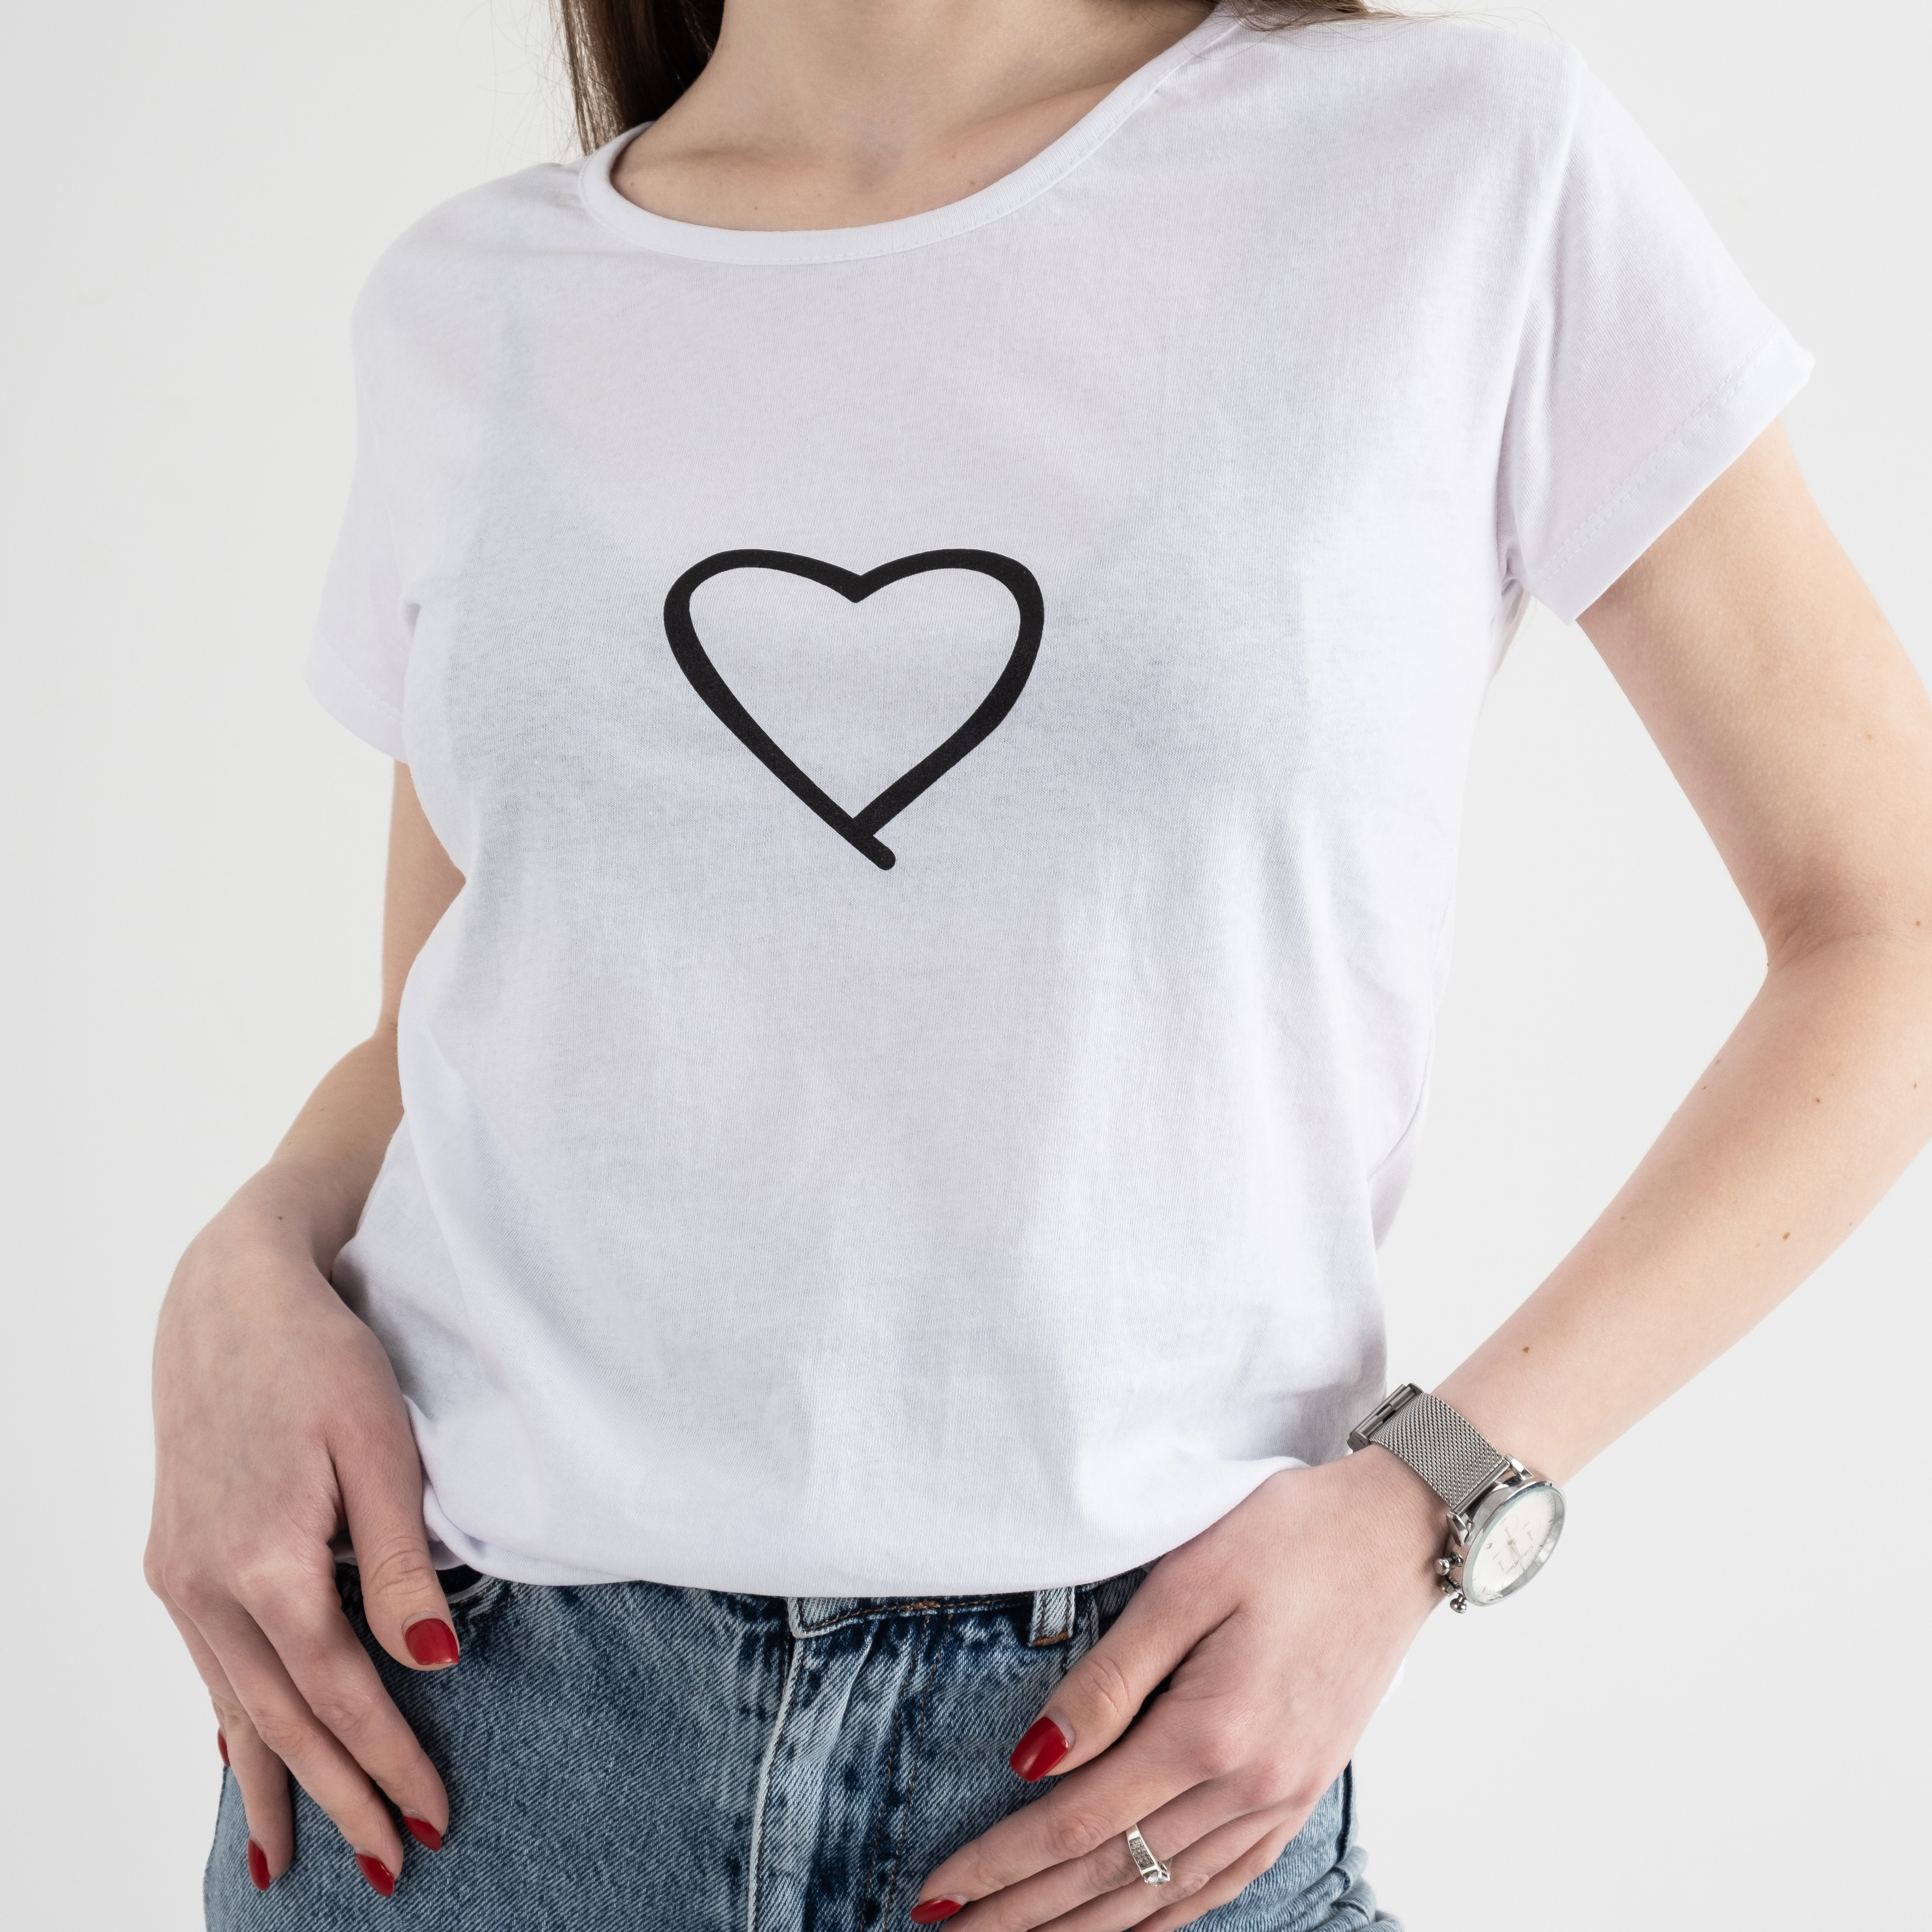 7041-10 БЕЛАЯ футболка женская с принтом (3 ед.размеры: S.M.L)